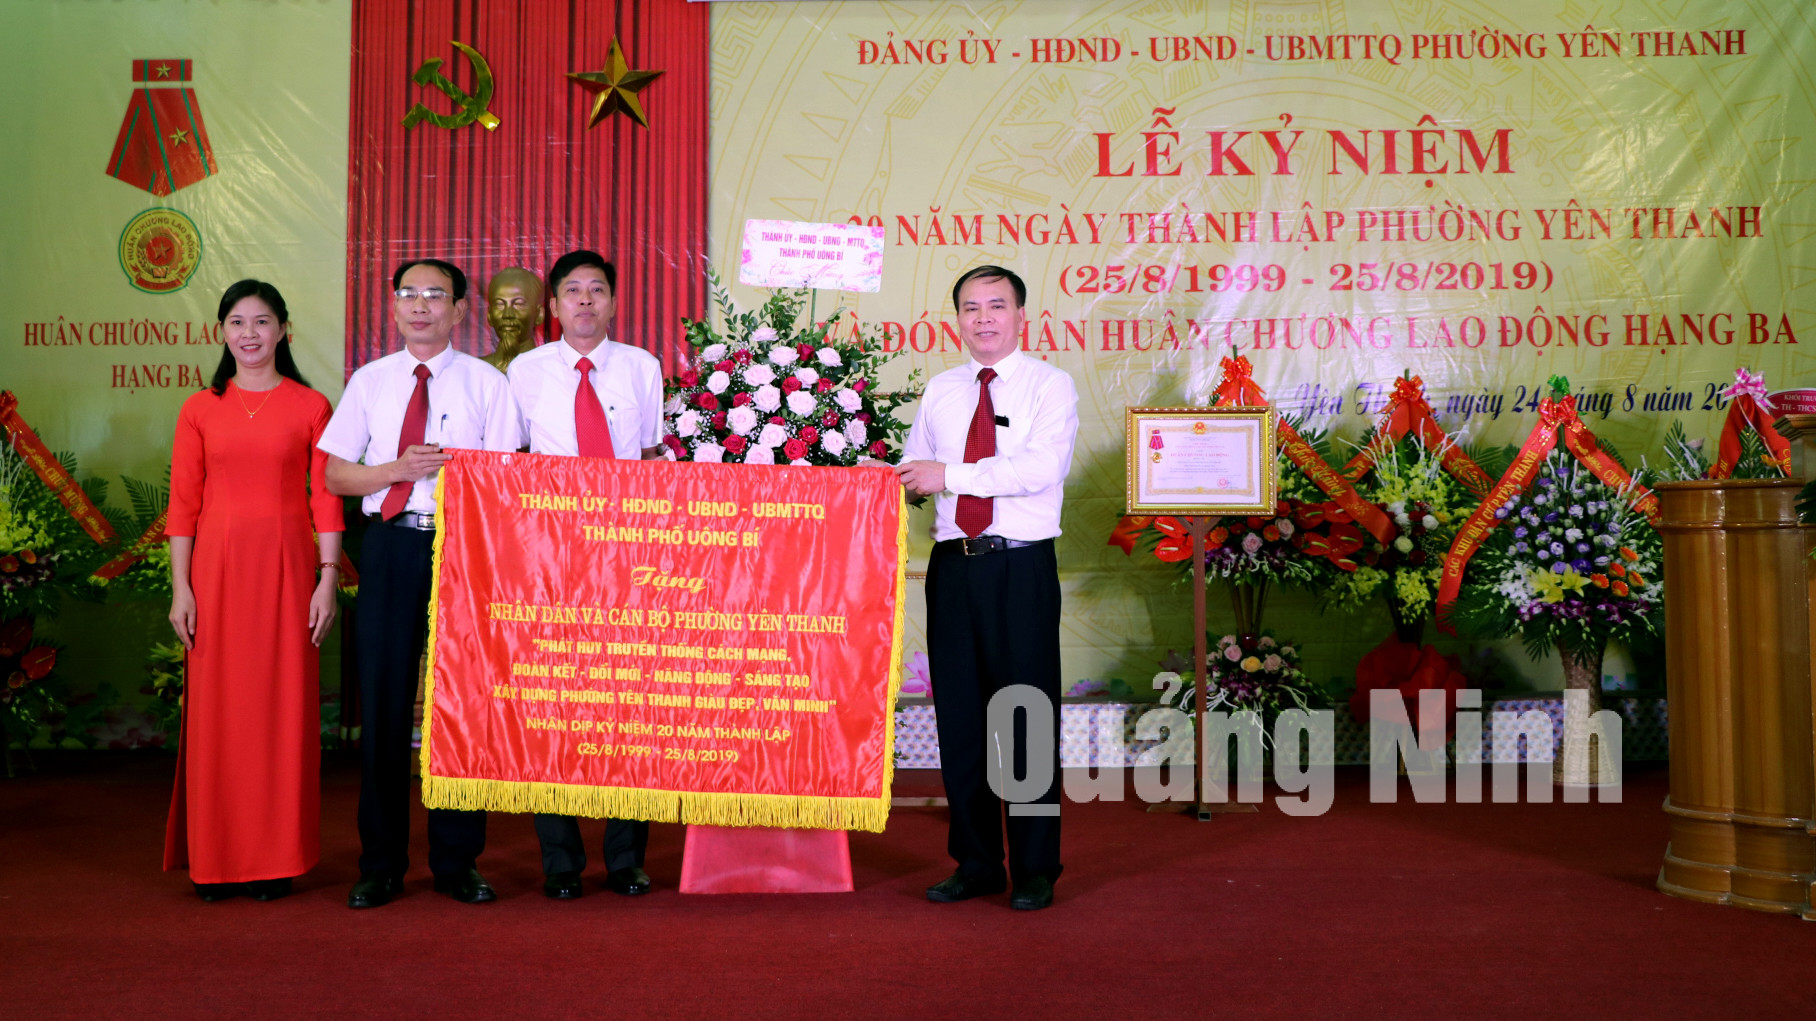 Nhân dịp này, phường Yên Thanh được nhận bức trướng của TP Uông Bí với dòng chữ: 